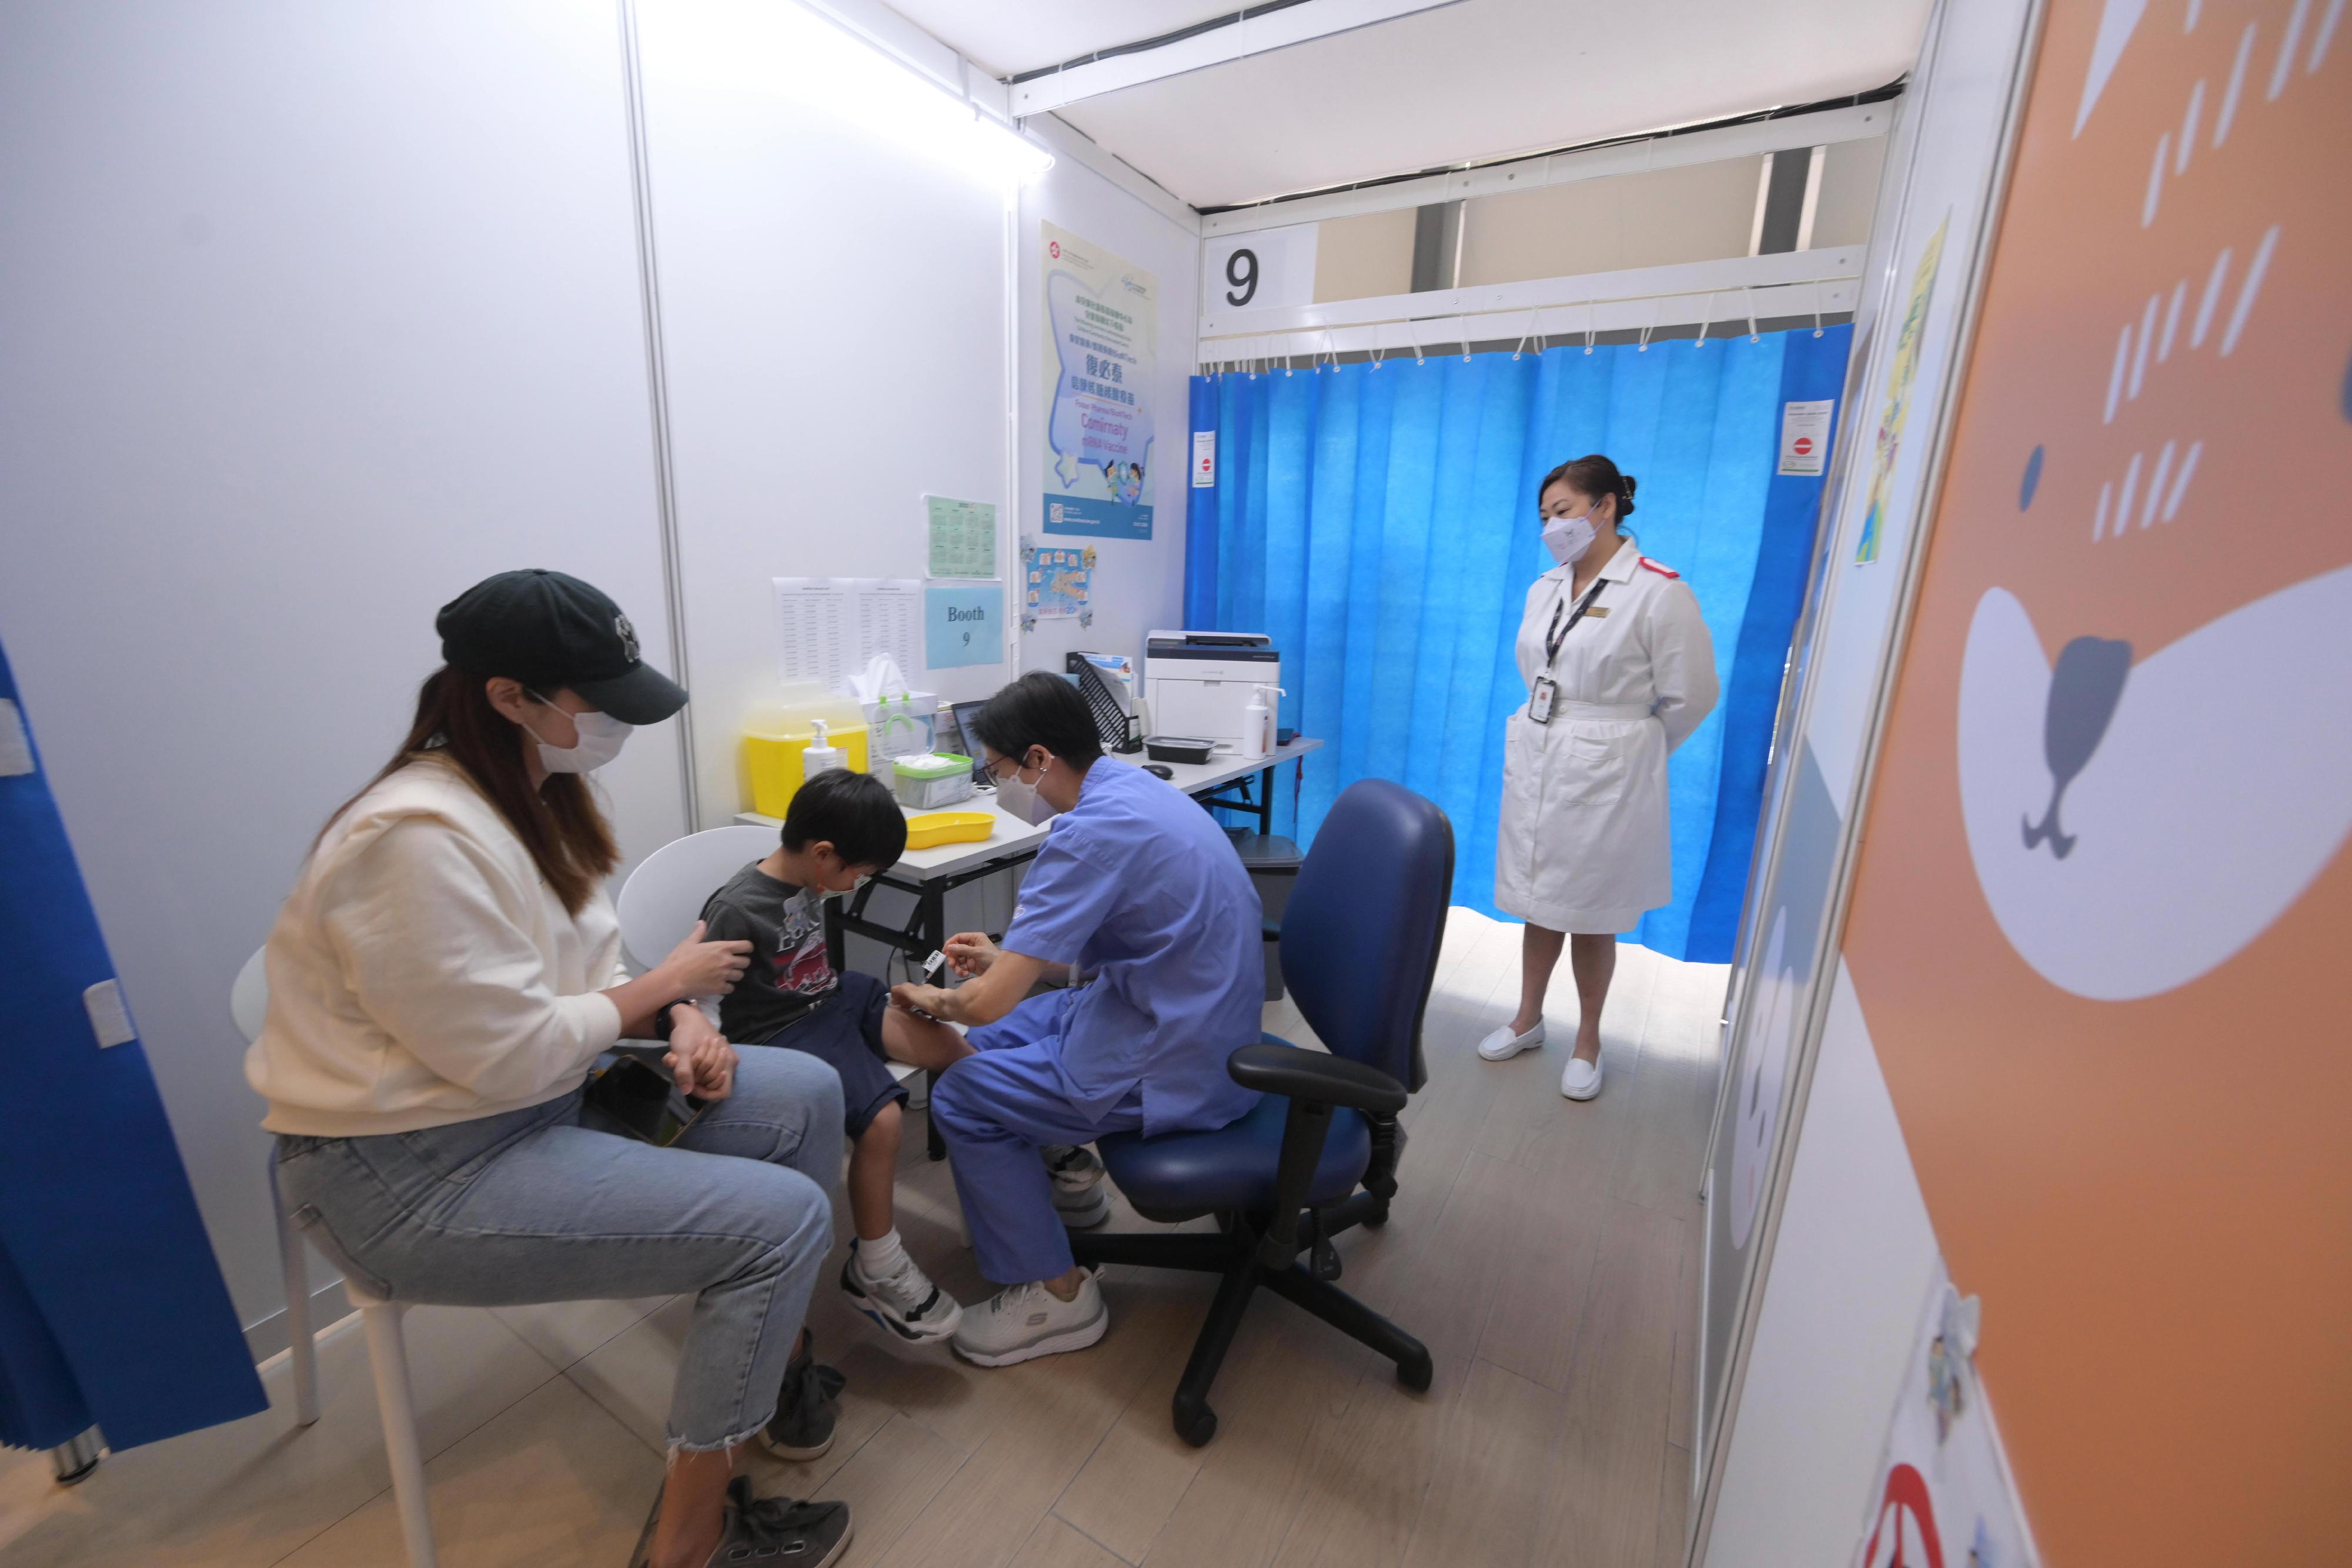 六個月至四歲的幼童今日（十一月九日）起可在四間兒童社區疫苗接種中心，免費接種復必泰疫苗幼兒配方。圖示一名幼童在香港兒童醫院兒童社區疫苗接種中心接種復必泰疫苗幼兒配方。